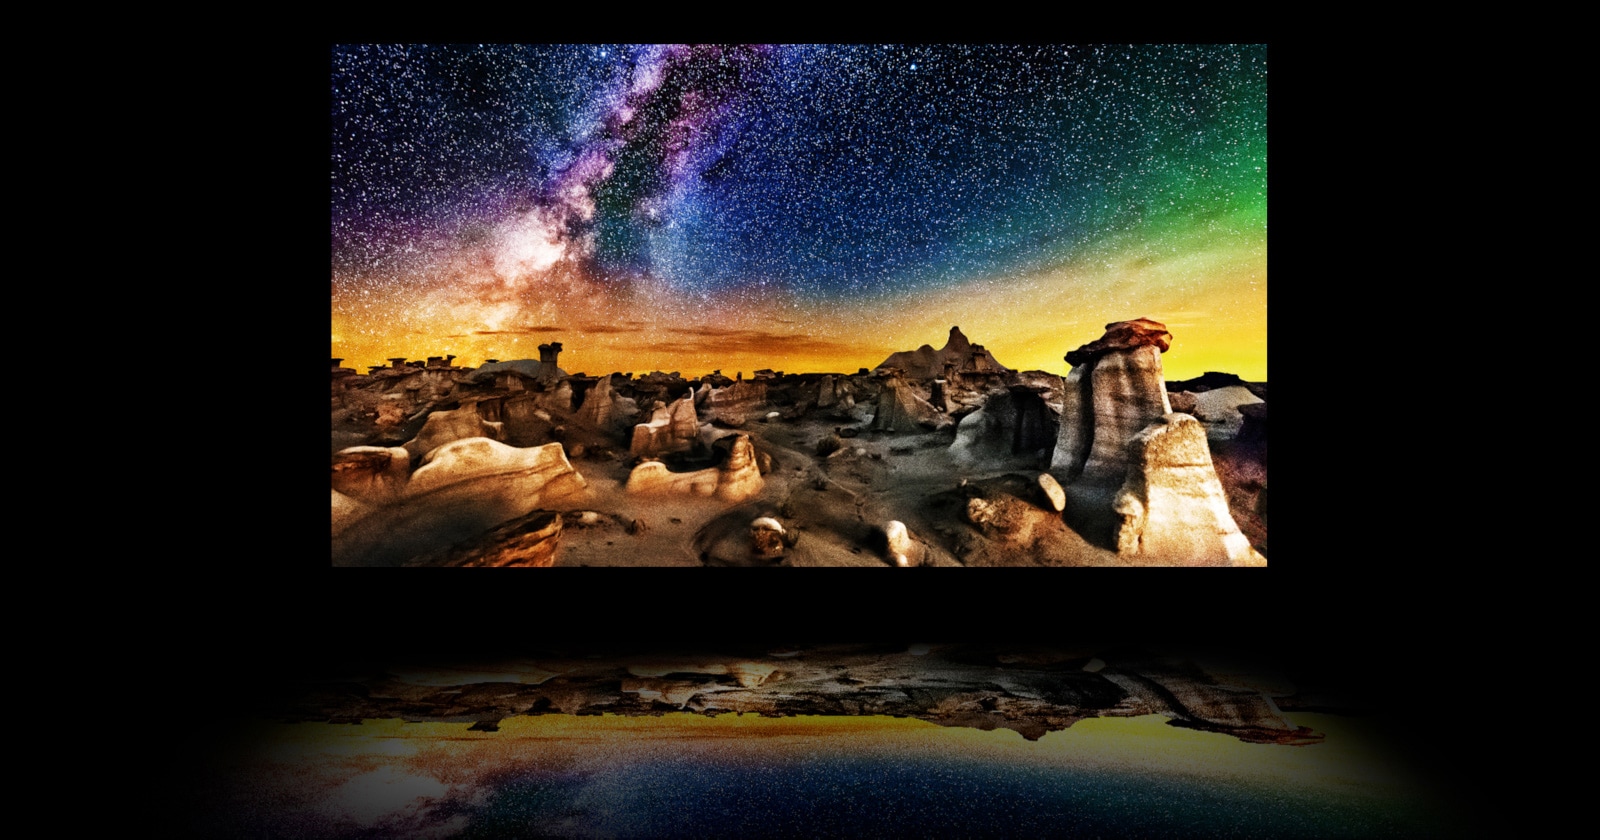 Une vidéo des couches d'un téléviseur avec une photographie de paysage nocturne étoilé sur l'écran OLED principal.  Le rétroéclairage disparaît et le polariseur, le filtre de couleur et l'OLED se combinent pour produire une image si lumineuse qu'elle se reflète sous le téléviseur comme sur l'eau.